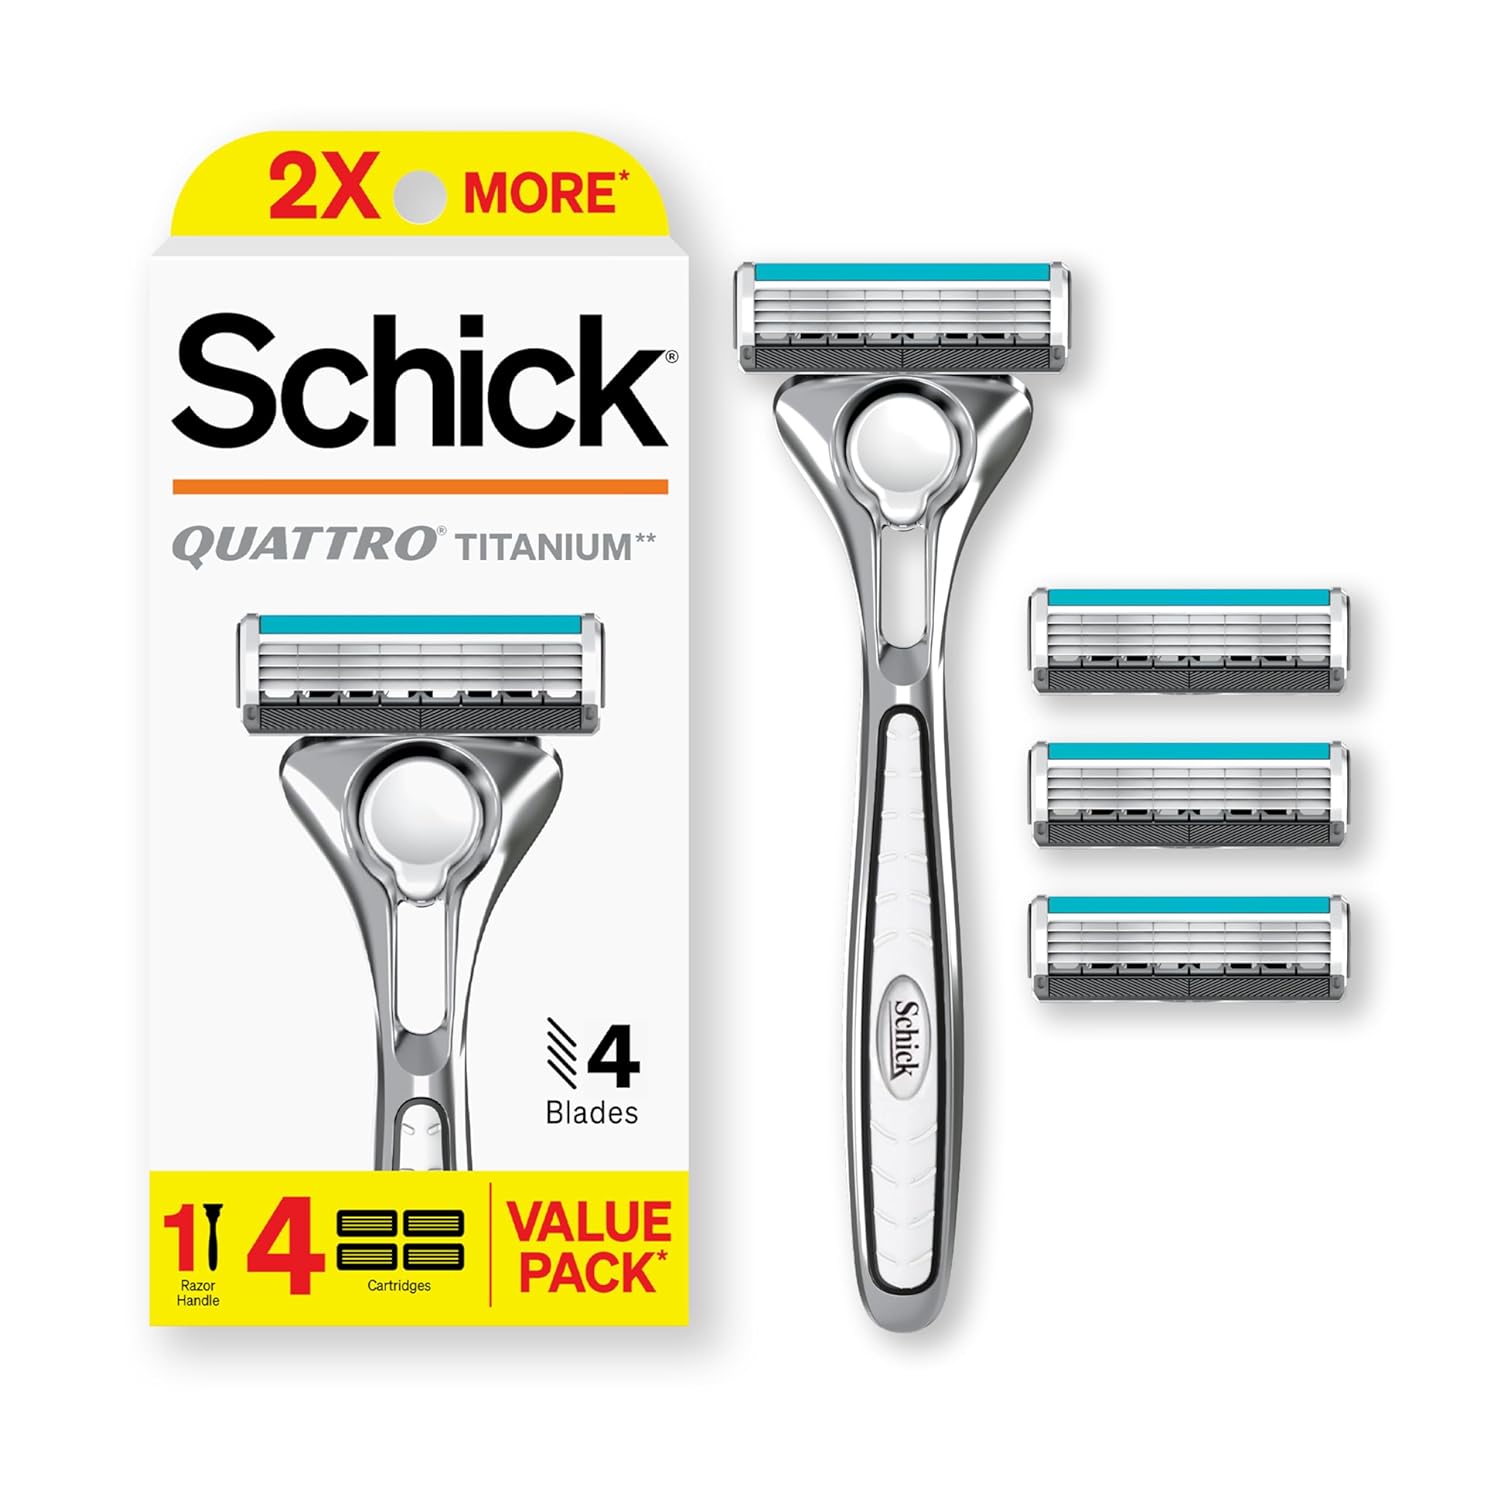 Schick Quattro Titanium Razor, 1 Razor Handle and 4 Cartridges | Shaving Razors for Men, 4 Blade Mens Razors for Shaving, Razor Blades for Men, 1 Handle with 4 Razor Blades Refills